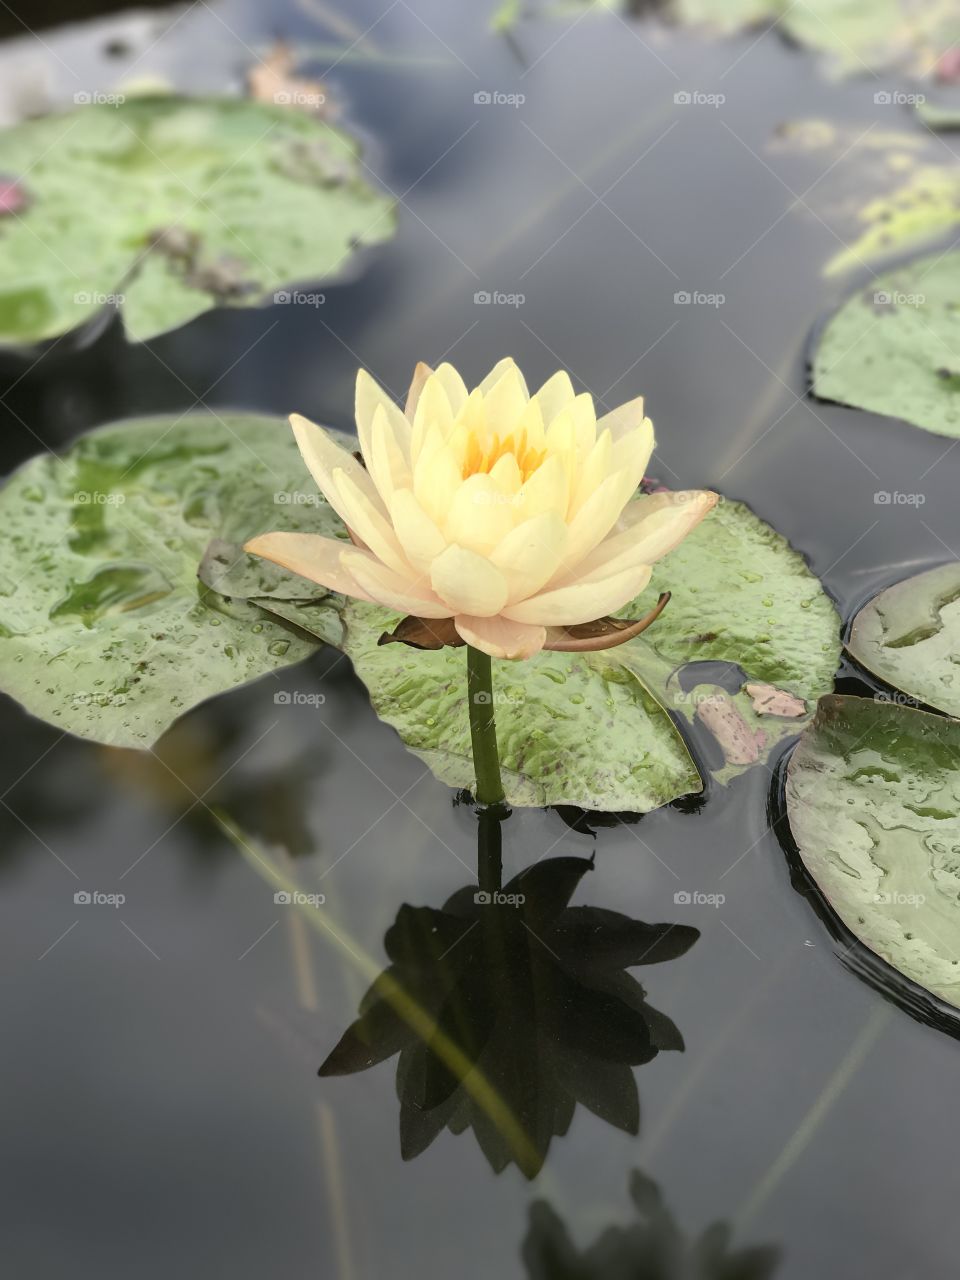 A lotus bloom